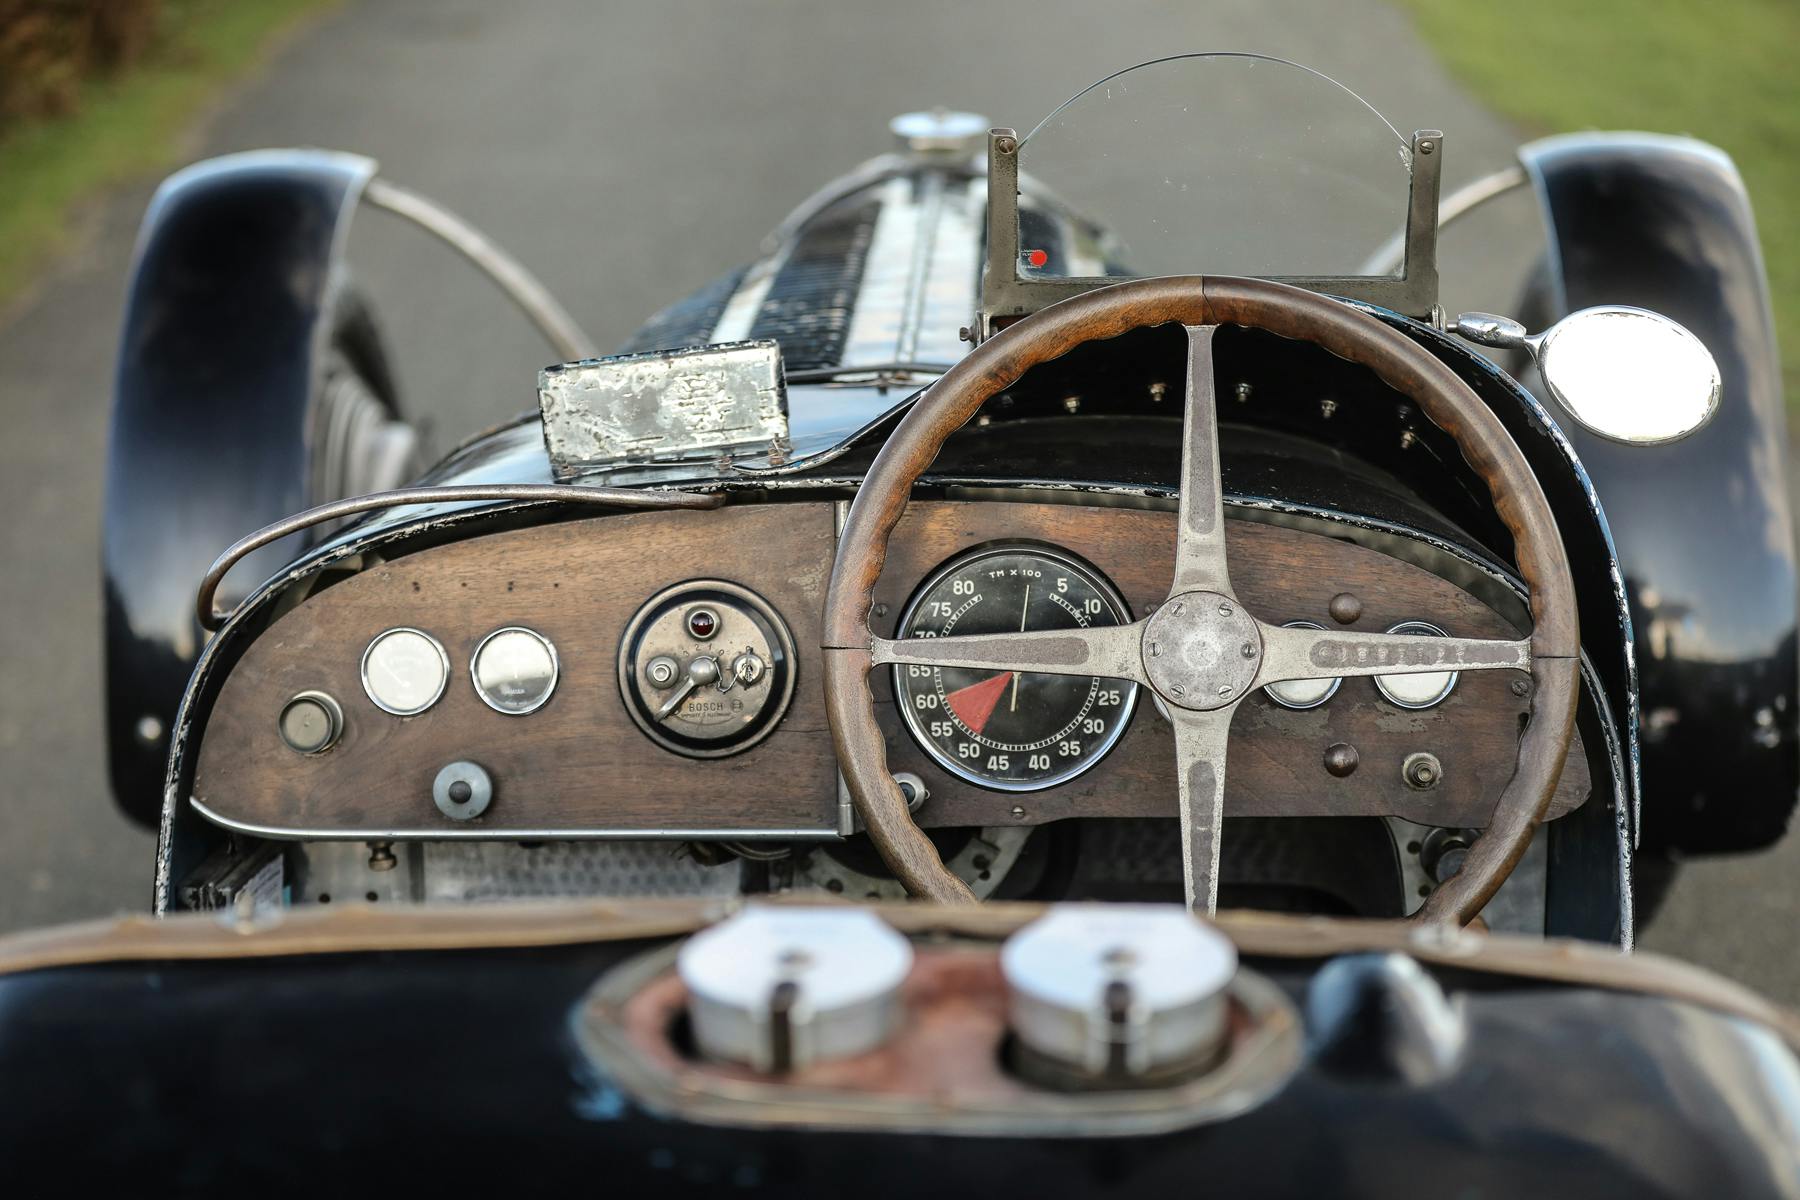 1934 Bugatti Type 59 interior cockpit